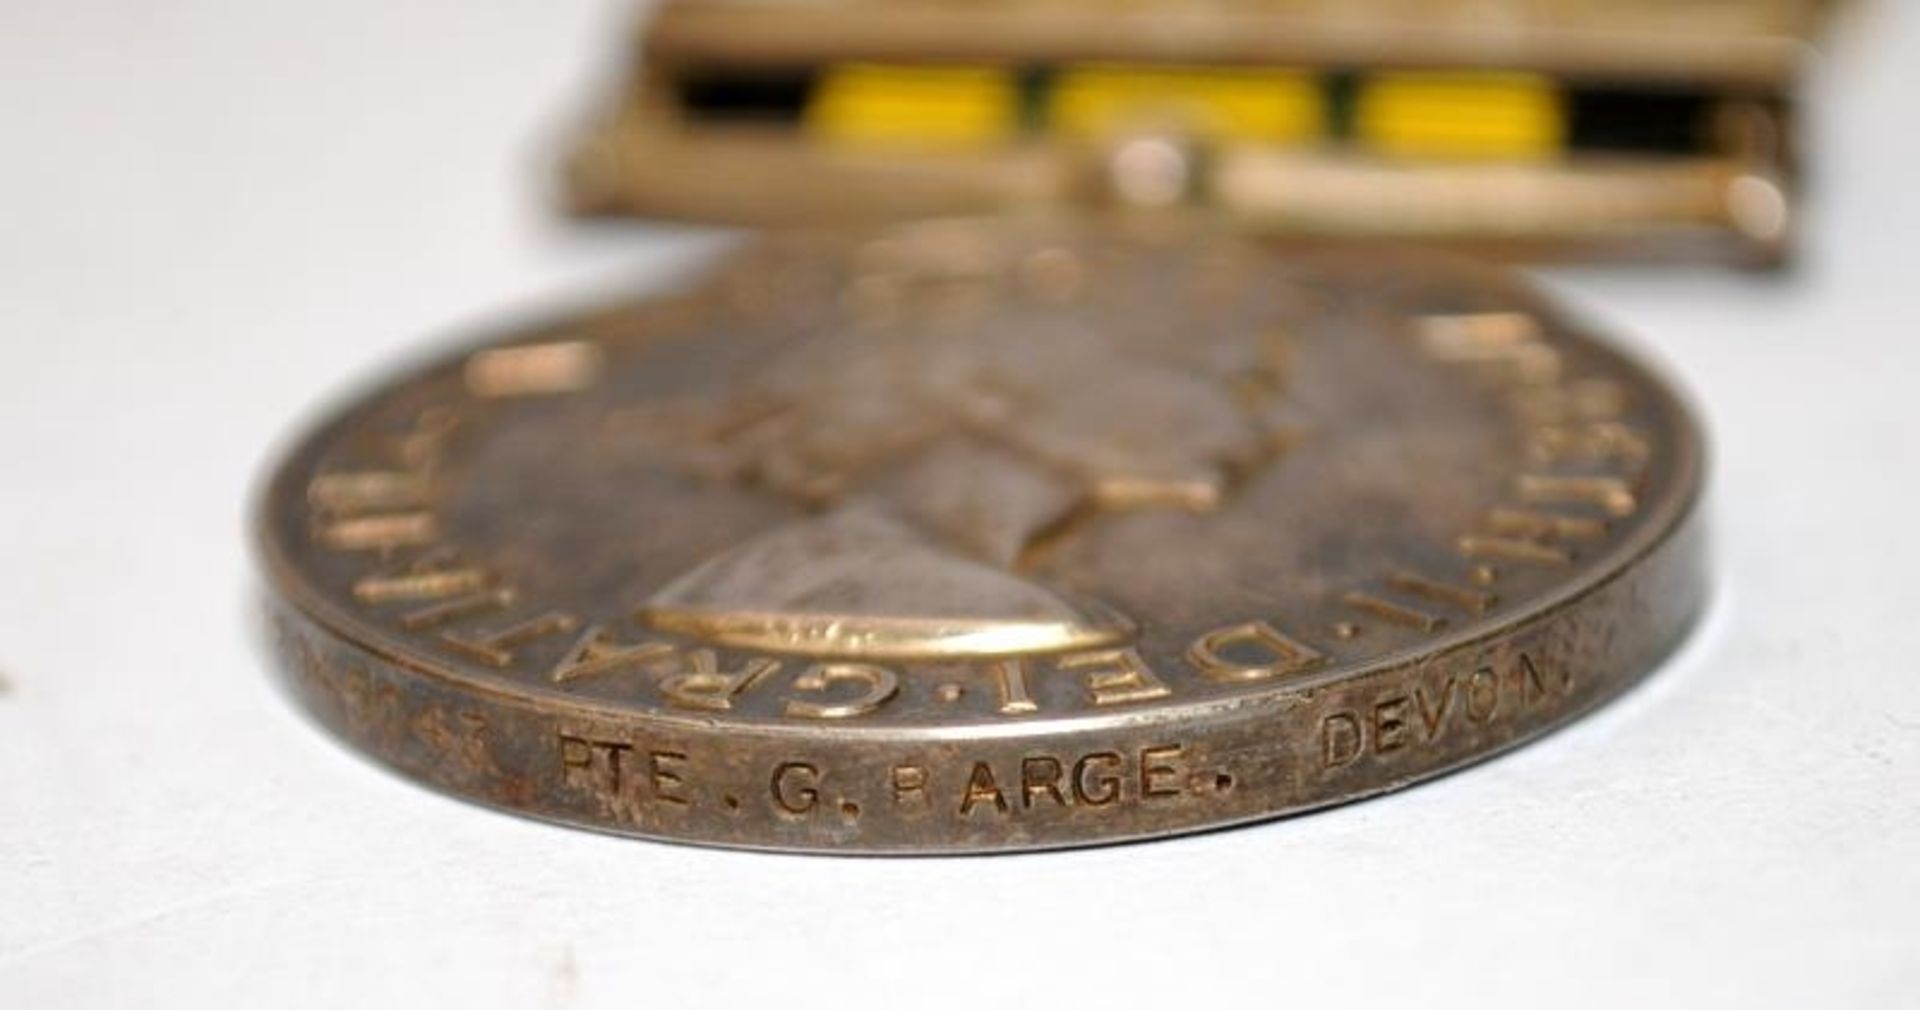 Africa General service medal with Kenya Bar issued to 22945043 Pte. G. Barge - Devon Regt. Lot - Image 4 of 6